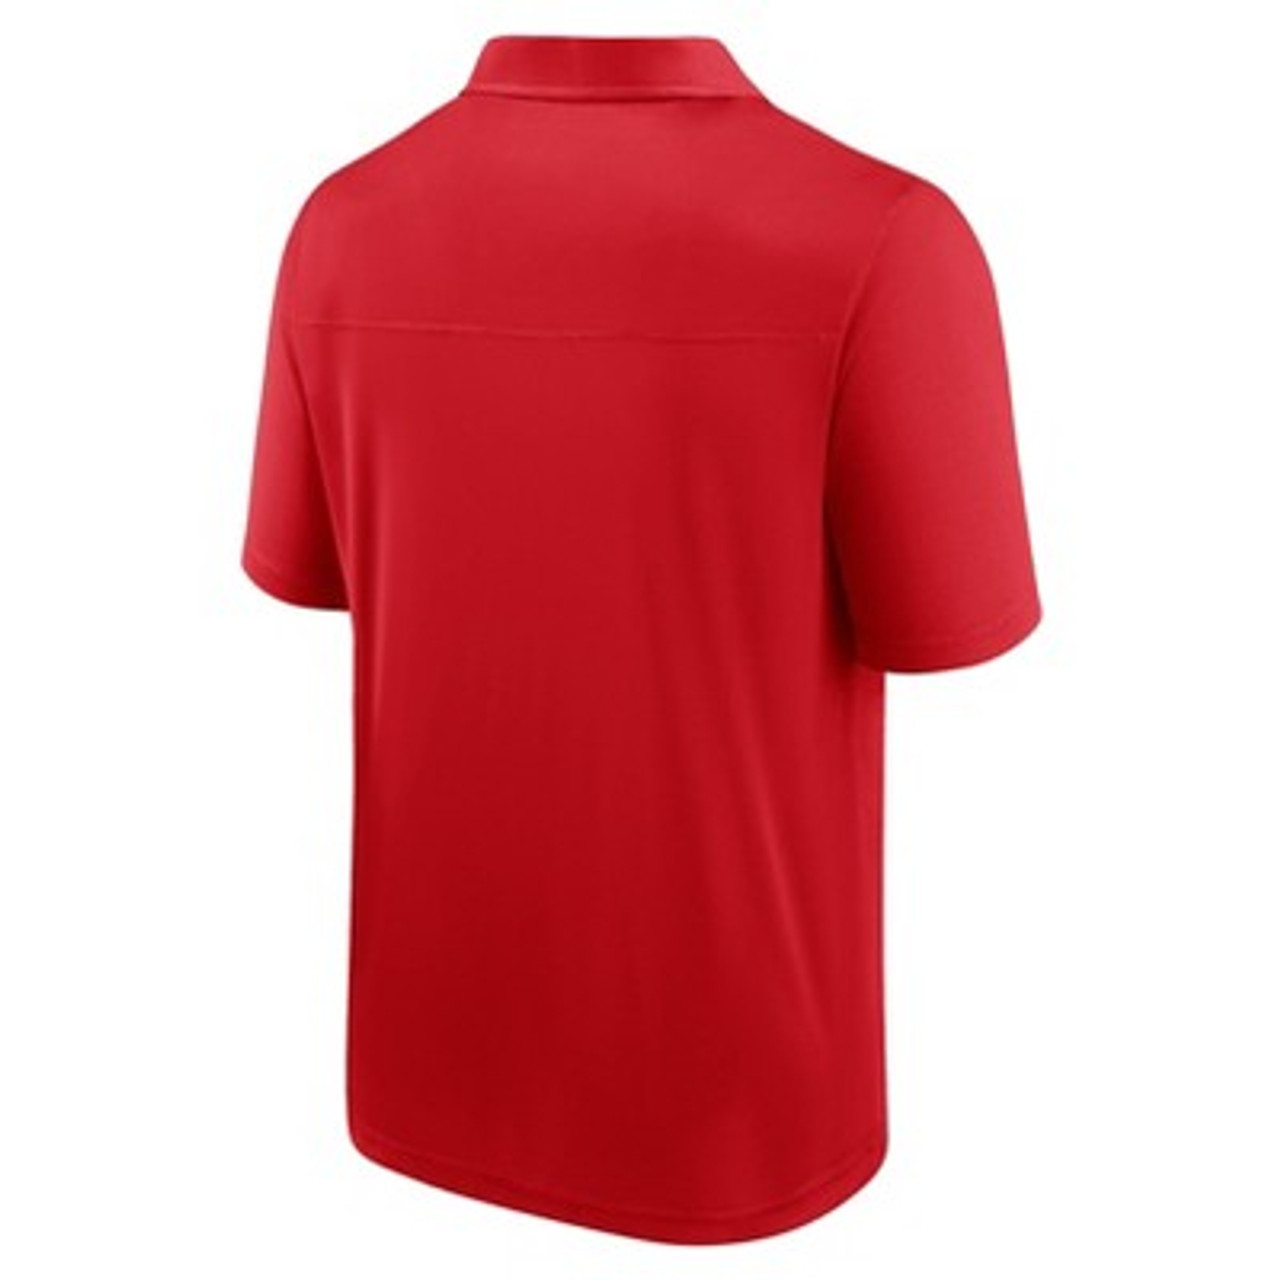 MLB St. Louis Cardinals Men's Polo T-Shirt - - ShopStyle